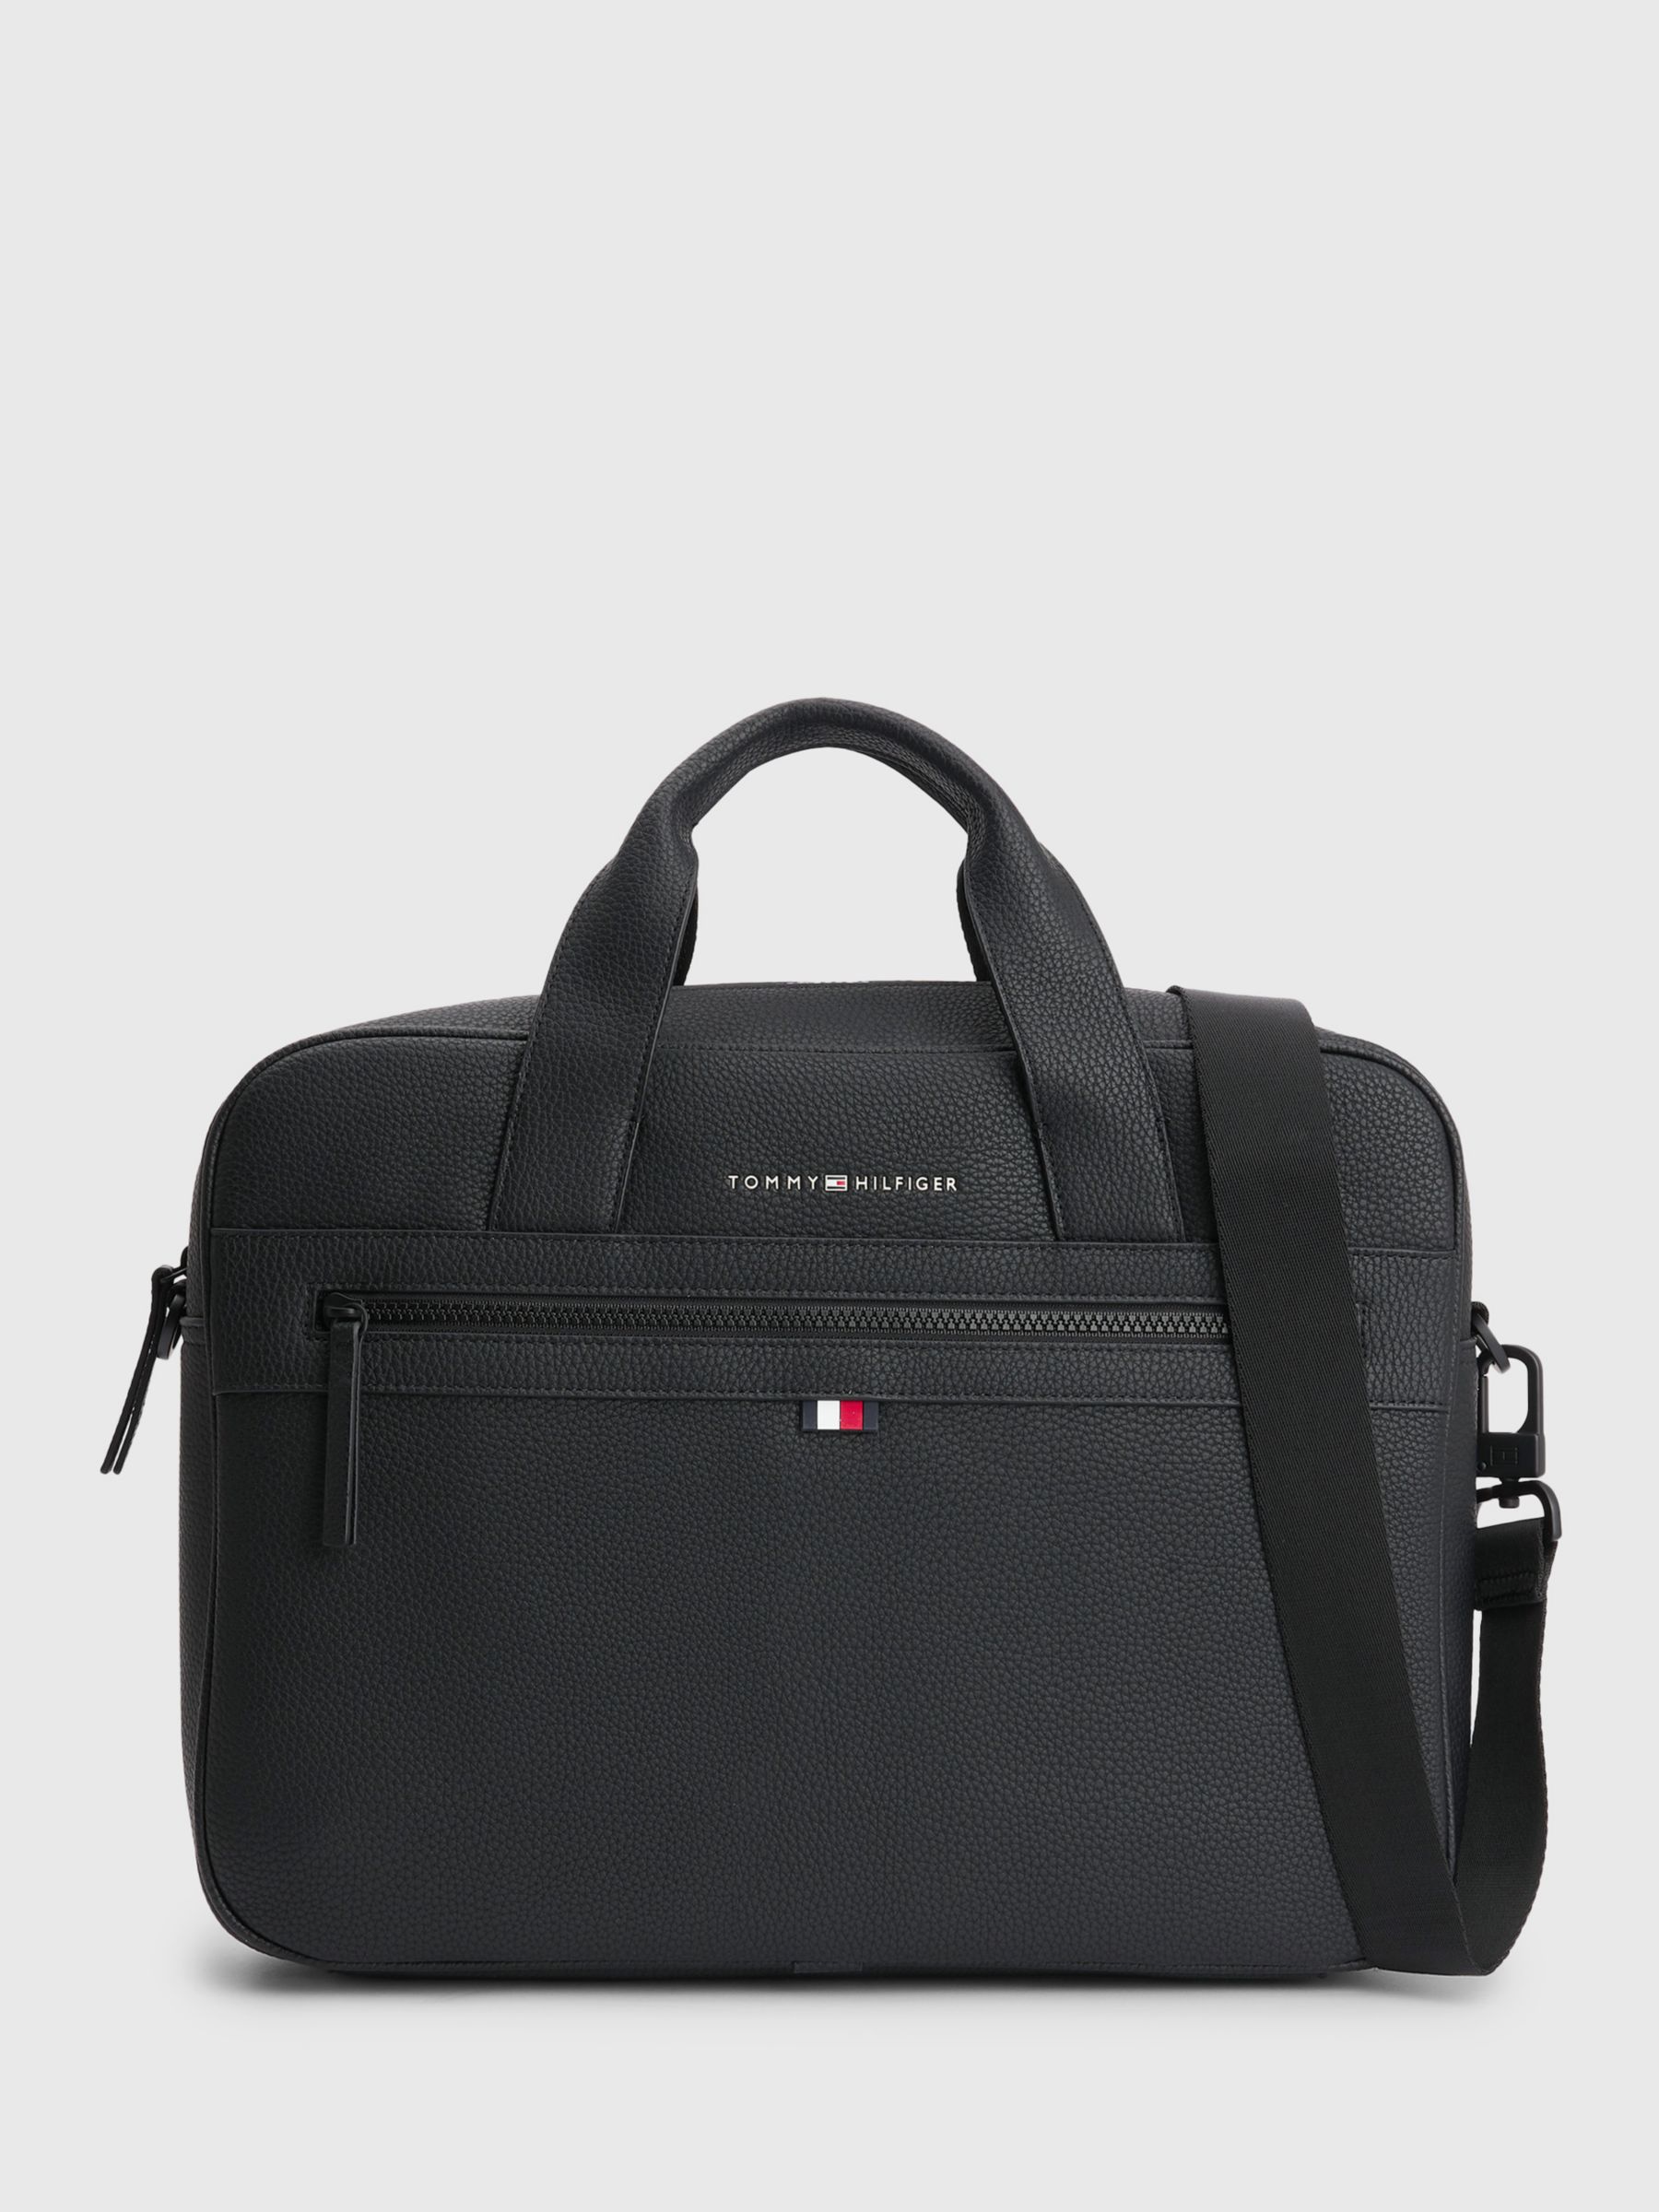 Tommy Hilfiger Essential Computer Bag, Black at John Lewis & Partners